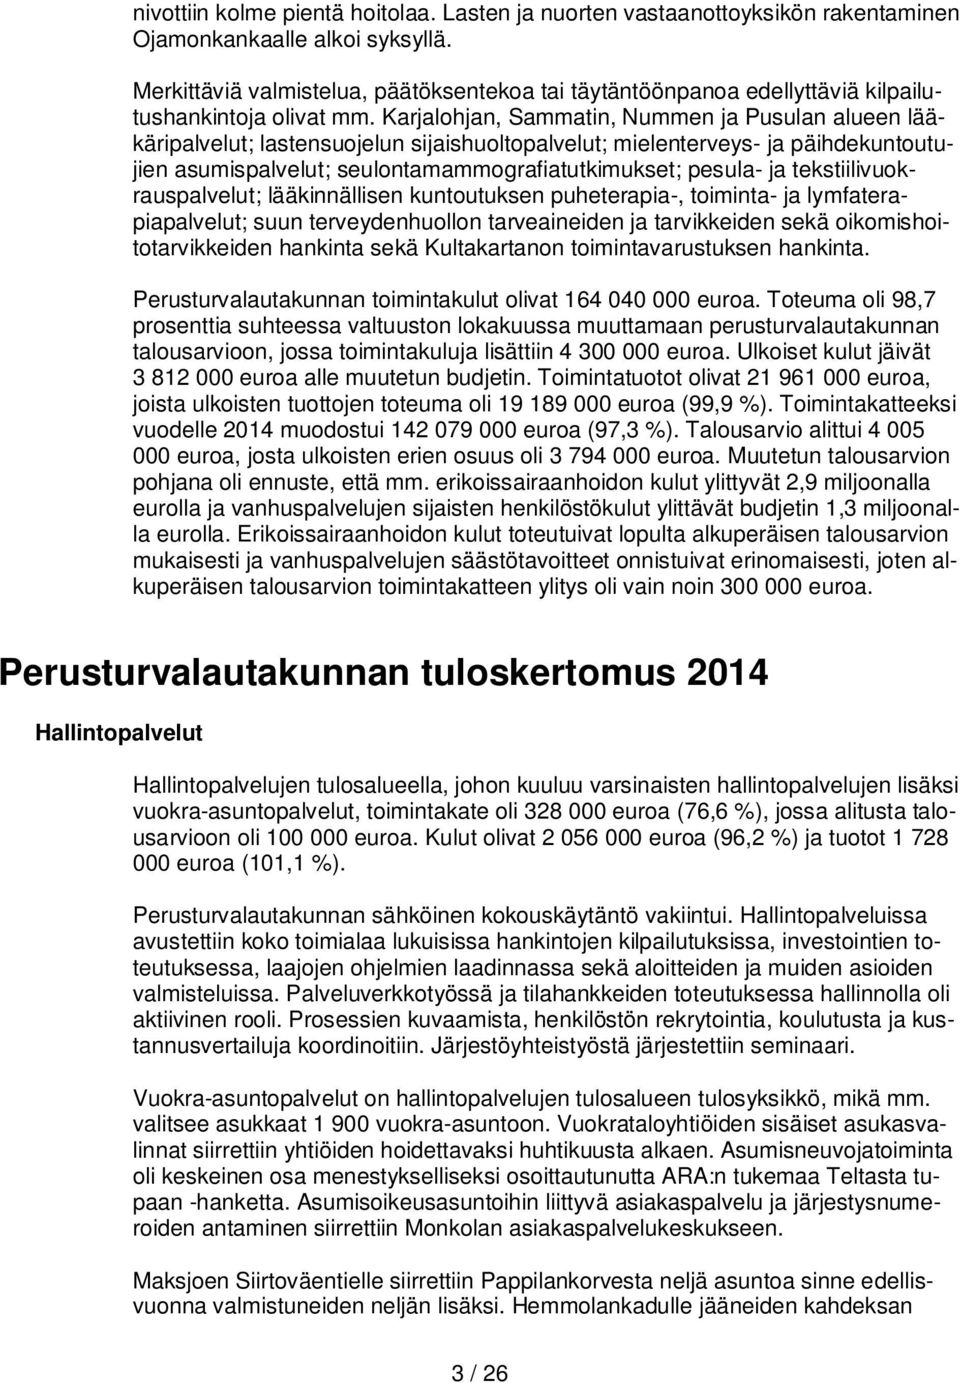 Karjalohjan, Sammatin, Nummen ja Pusulan alueen lääkäripalvelut; lastensuojelun sijaishuoltopalvelut; mielenterveys- ja päihdekuntoutujien asumispalvelut; seulontamammografiatutkimukset; pesula- ja